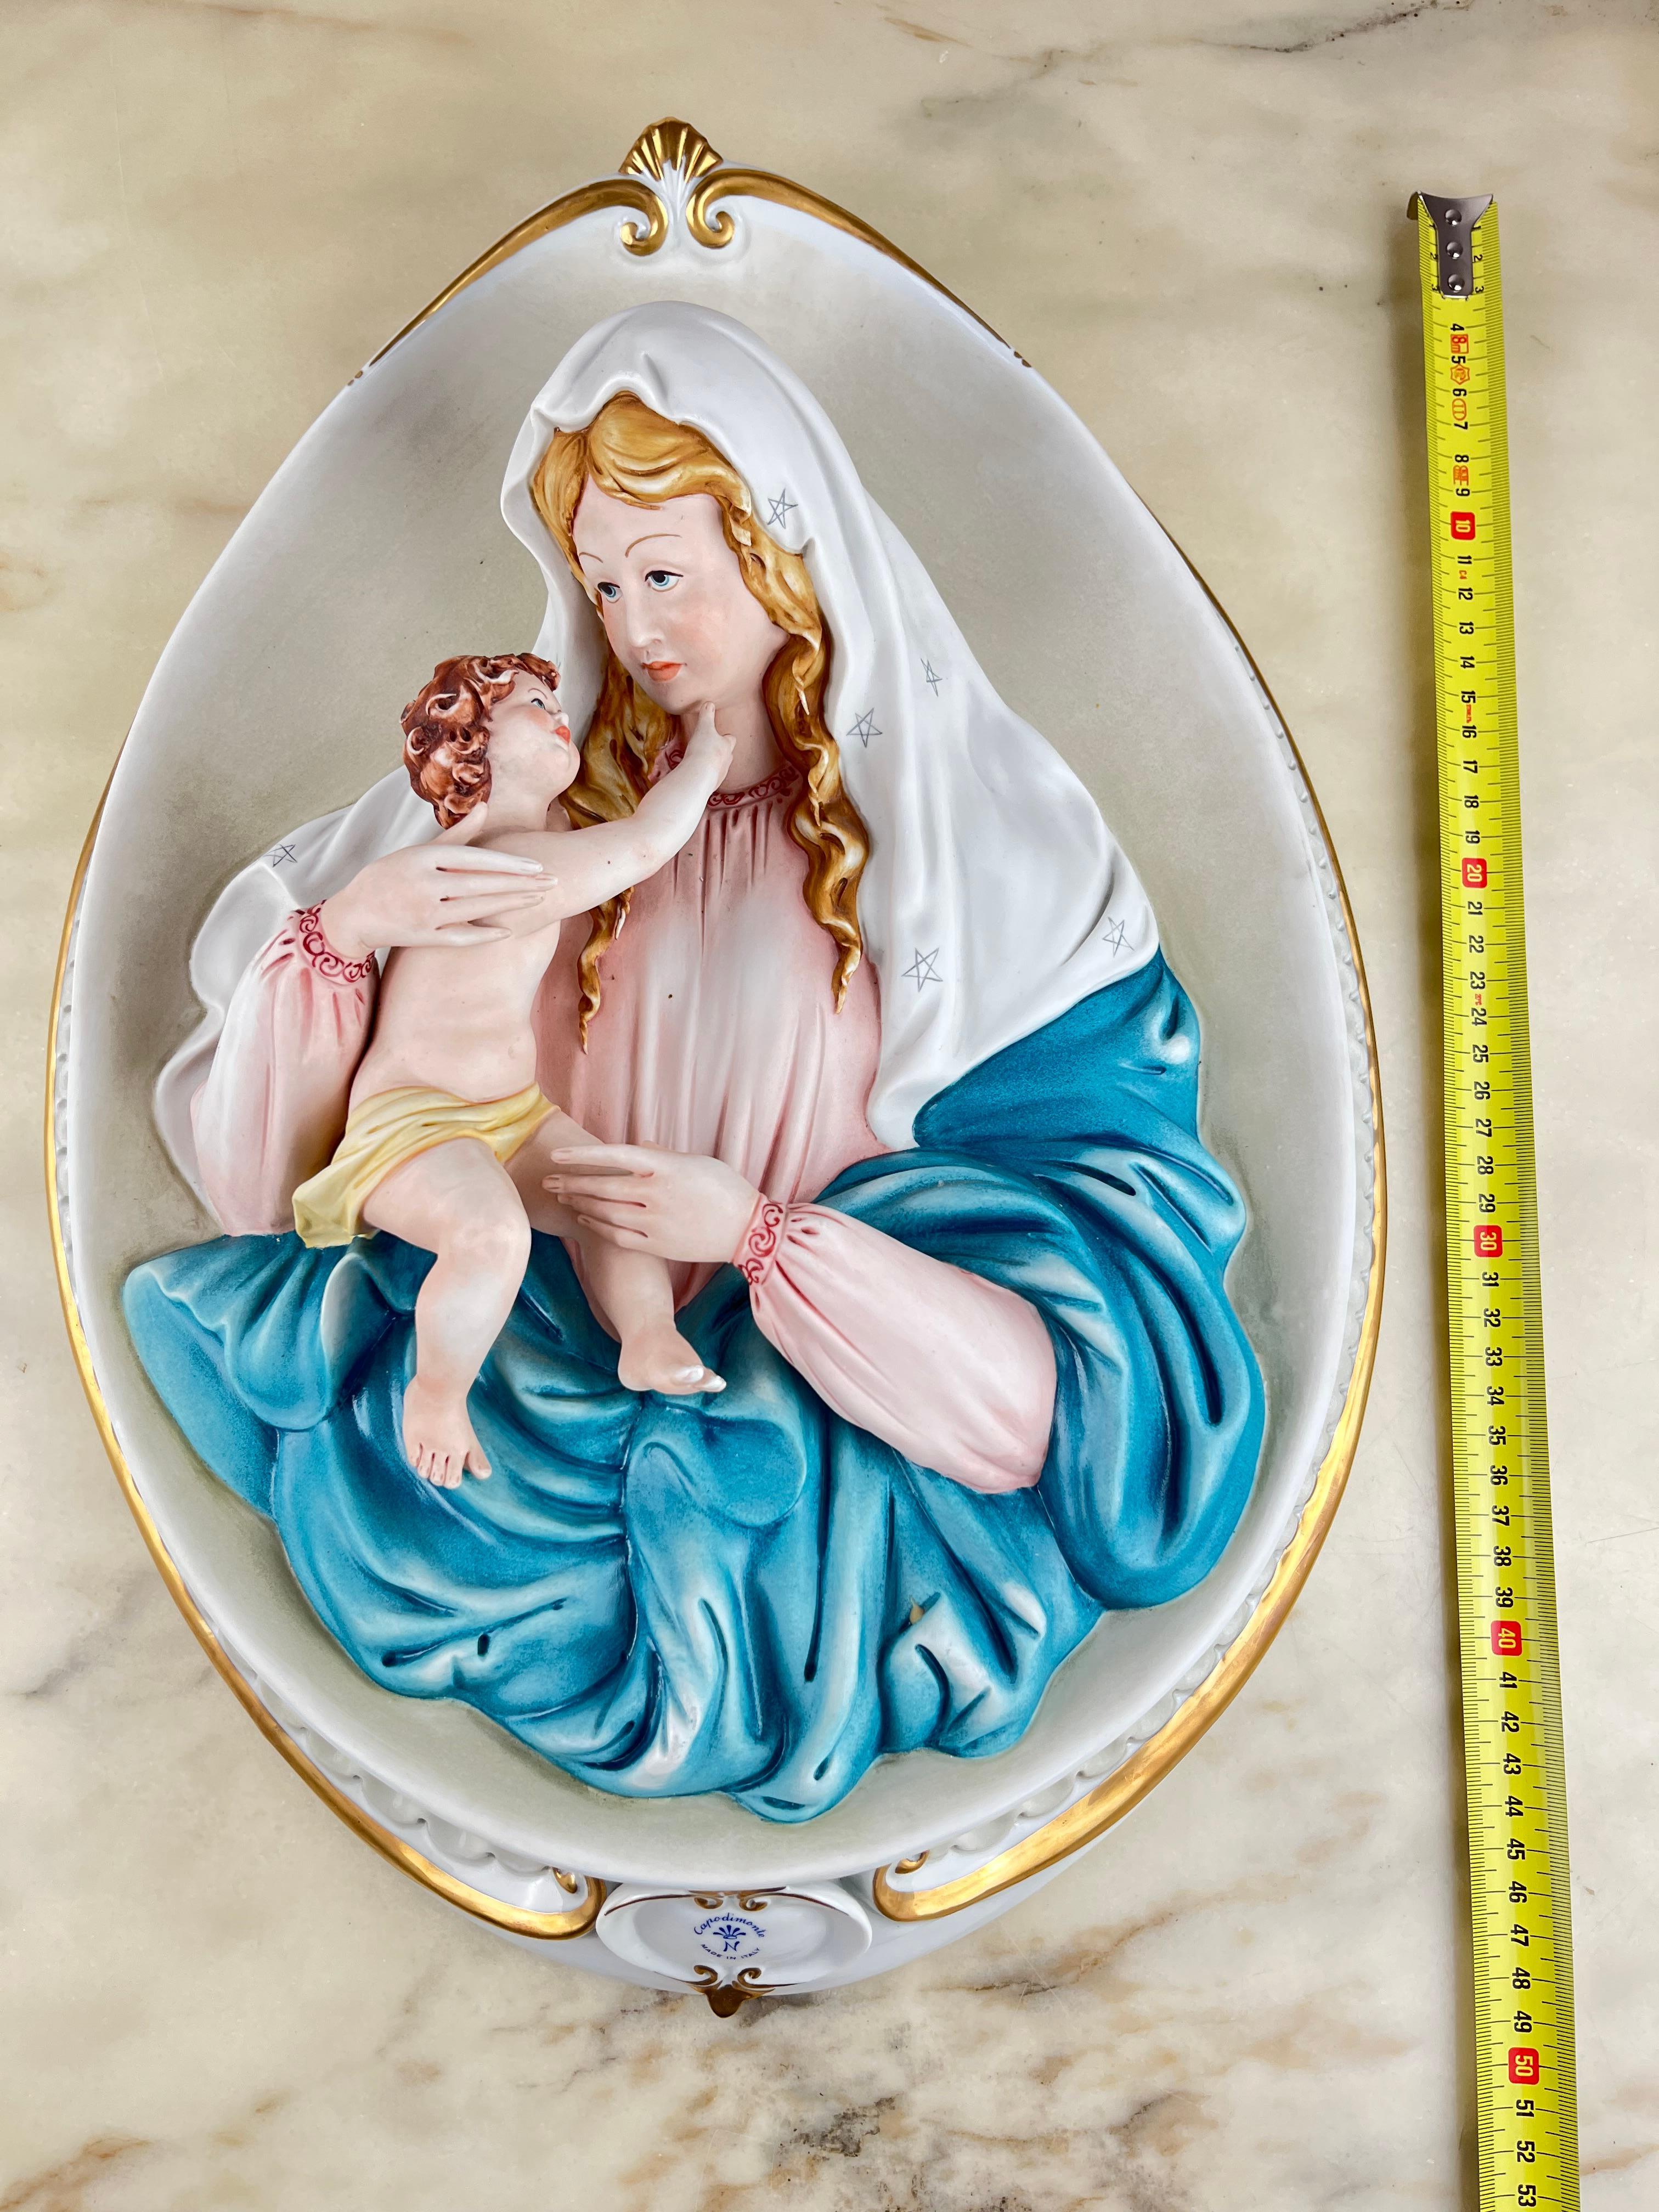 Capodimonte Kopfteil Madonna mit Kind, Made in Italy, 1980er Jahre
Er wurde in einer noblen Wohnung gefunden und hat beachtliche Abmessungen (Höhe 47 cm).
Unversehrt. Kleine Zeichen der Zeit. Es ist schwierig, ein Exemplar in diesem Zustand zu